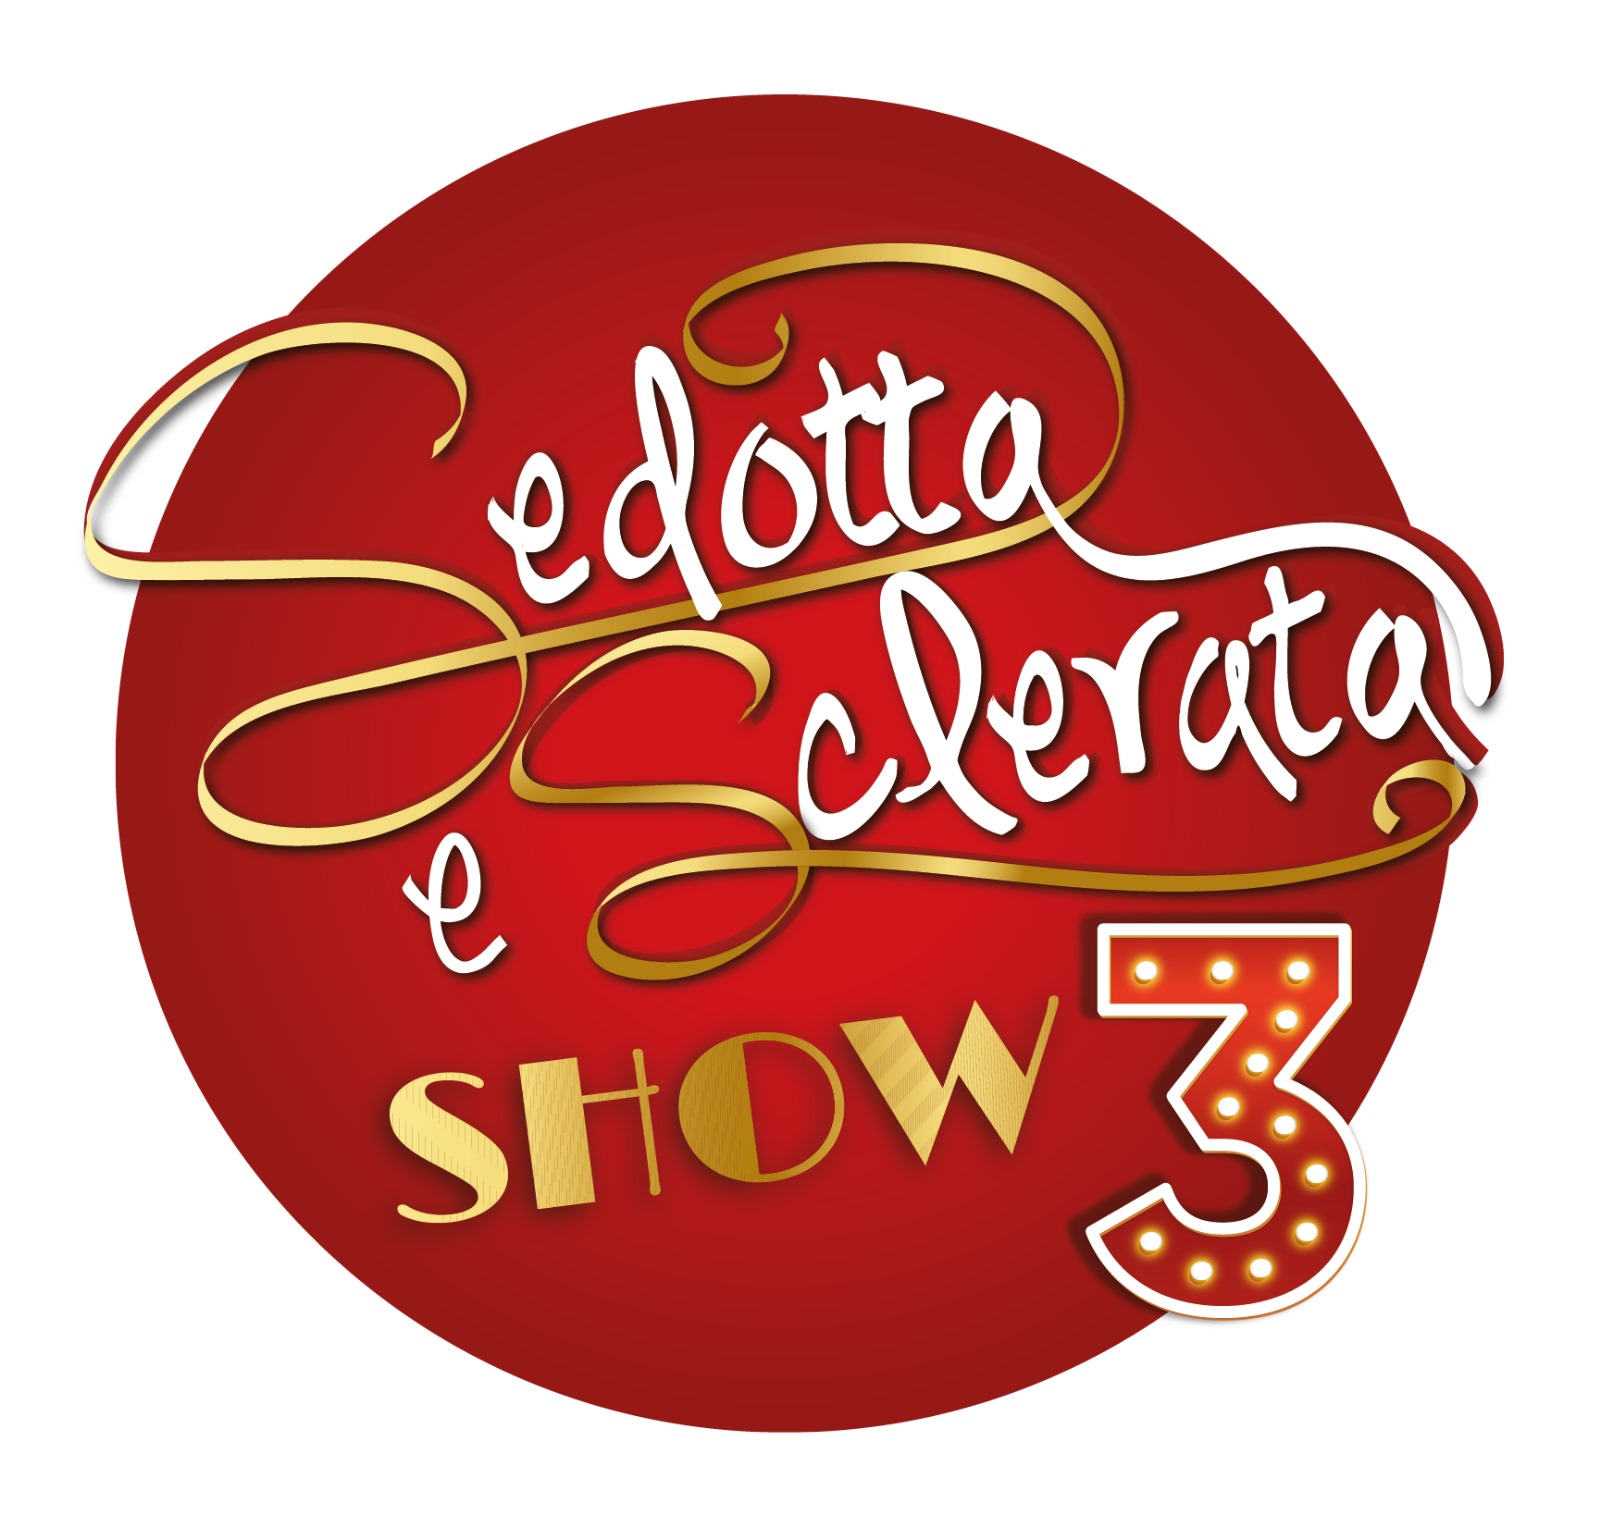 Sedotta e Sclerata Show 3